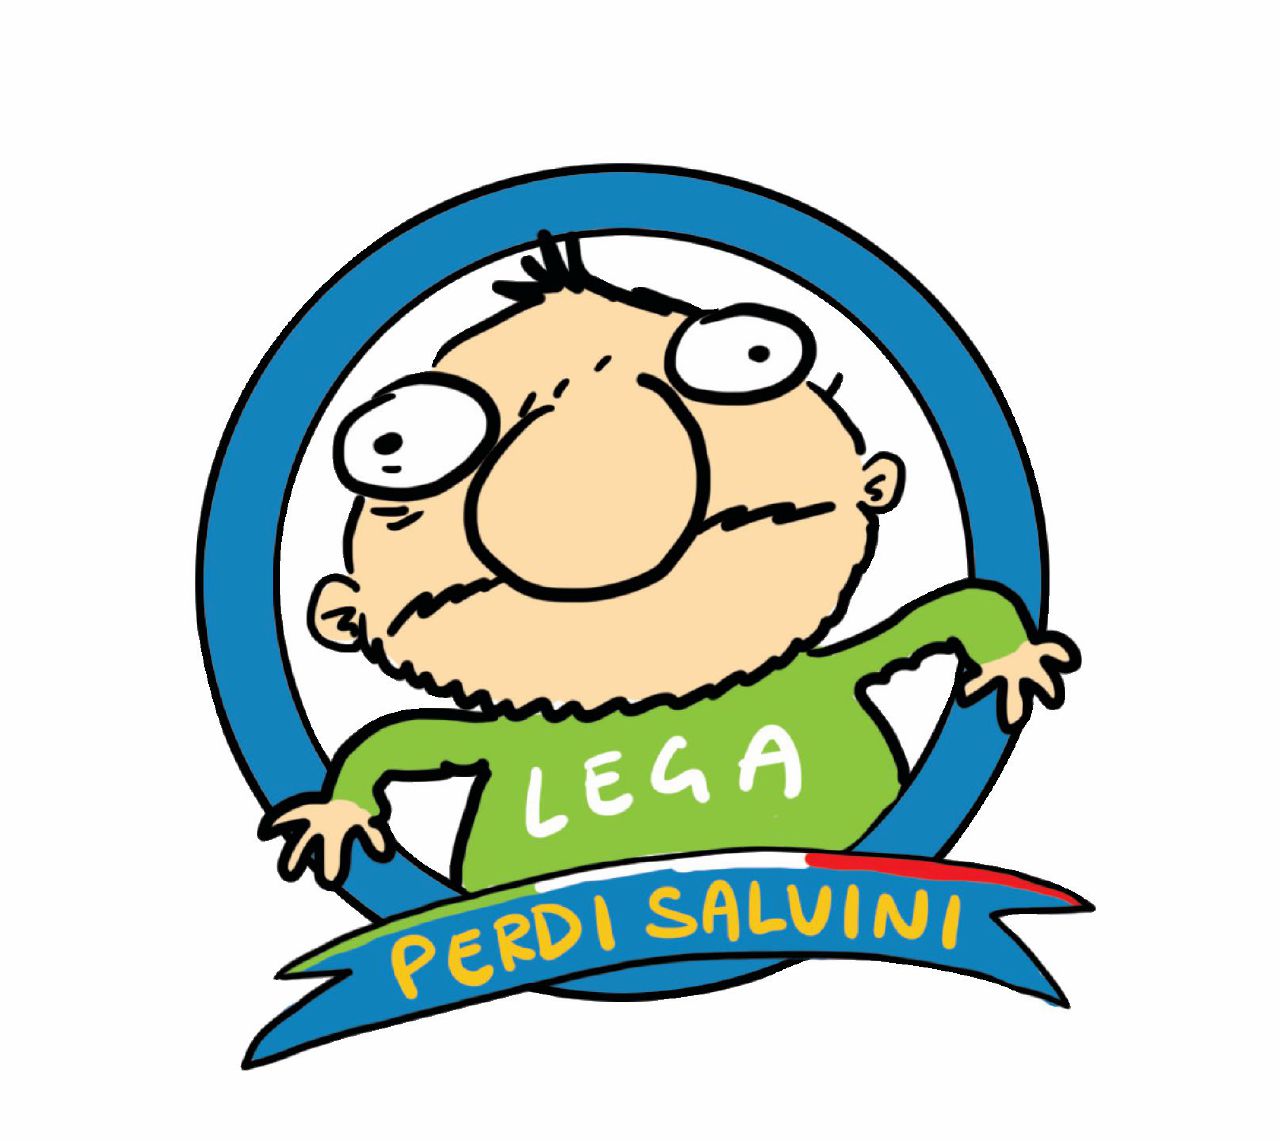 Copertina di “Perdi Salvini”, il Fatto lancia il concorso del migliore striscione. Inviateci gli slogan più spiritosi